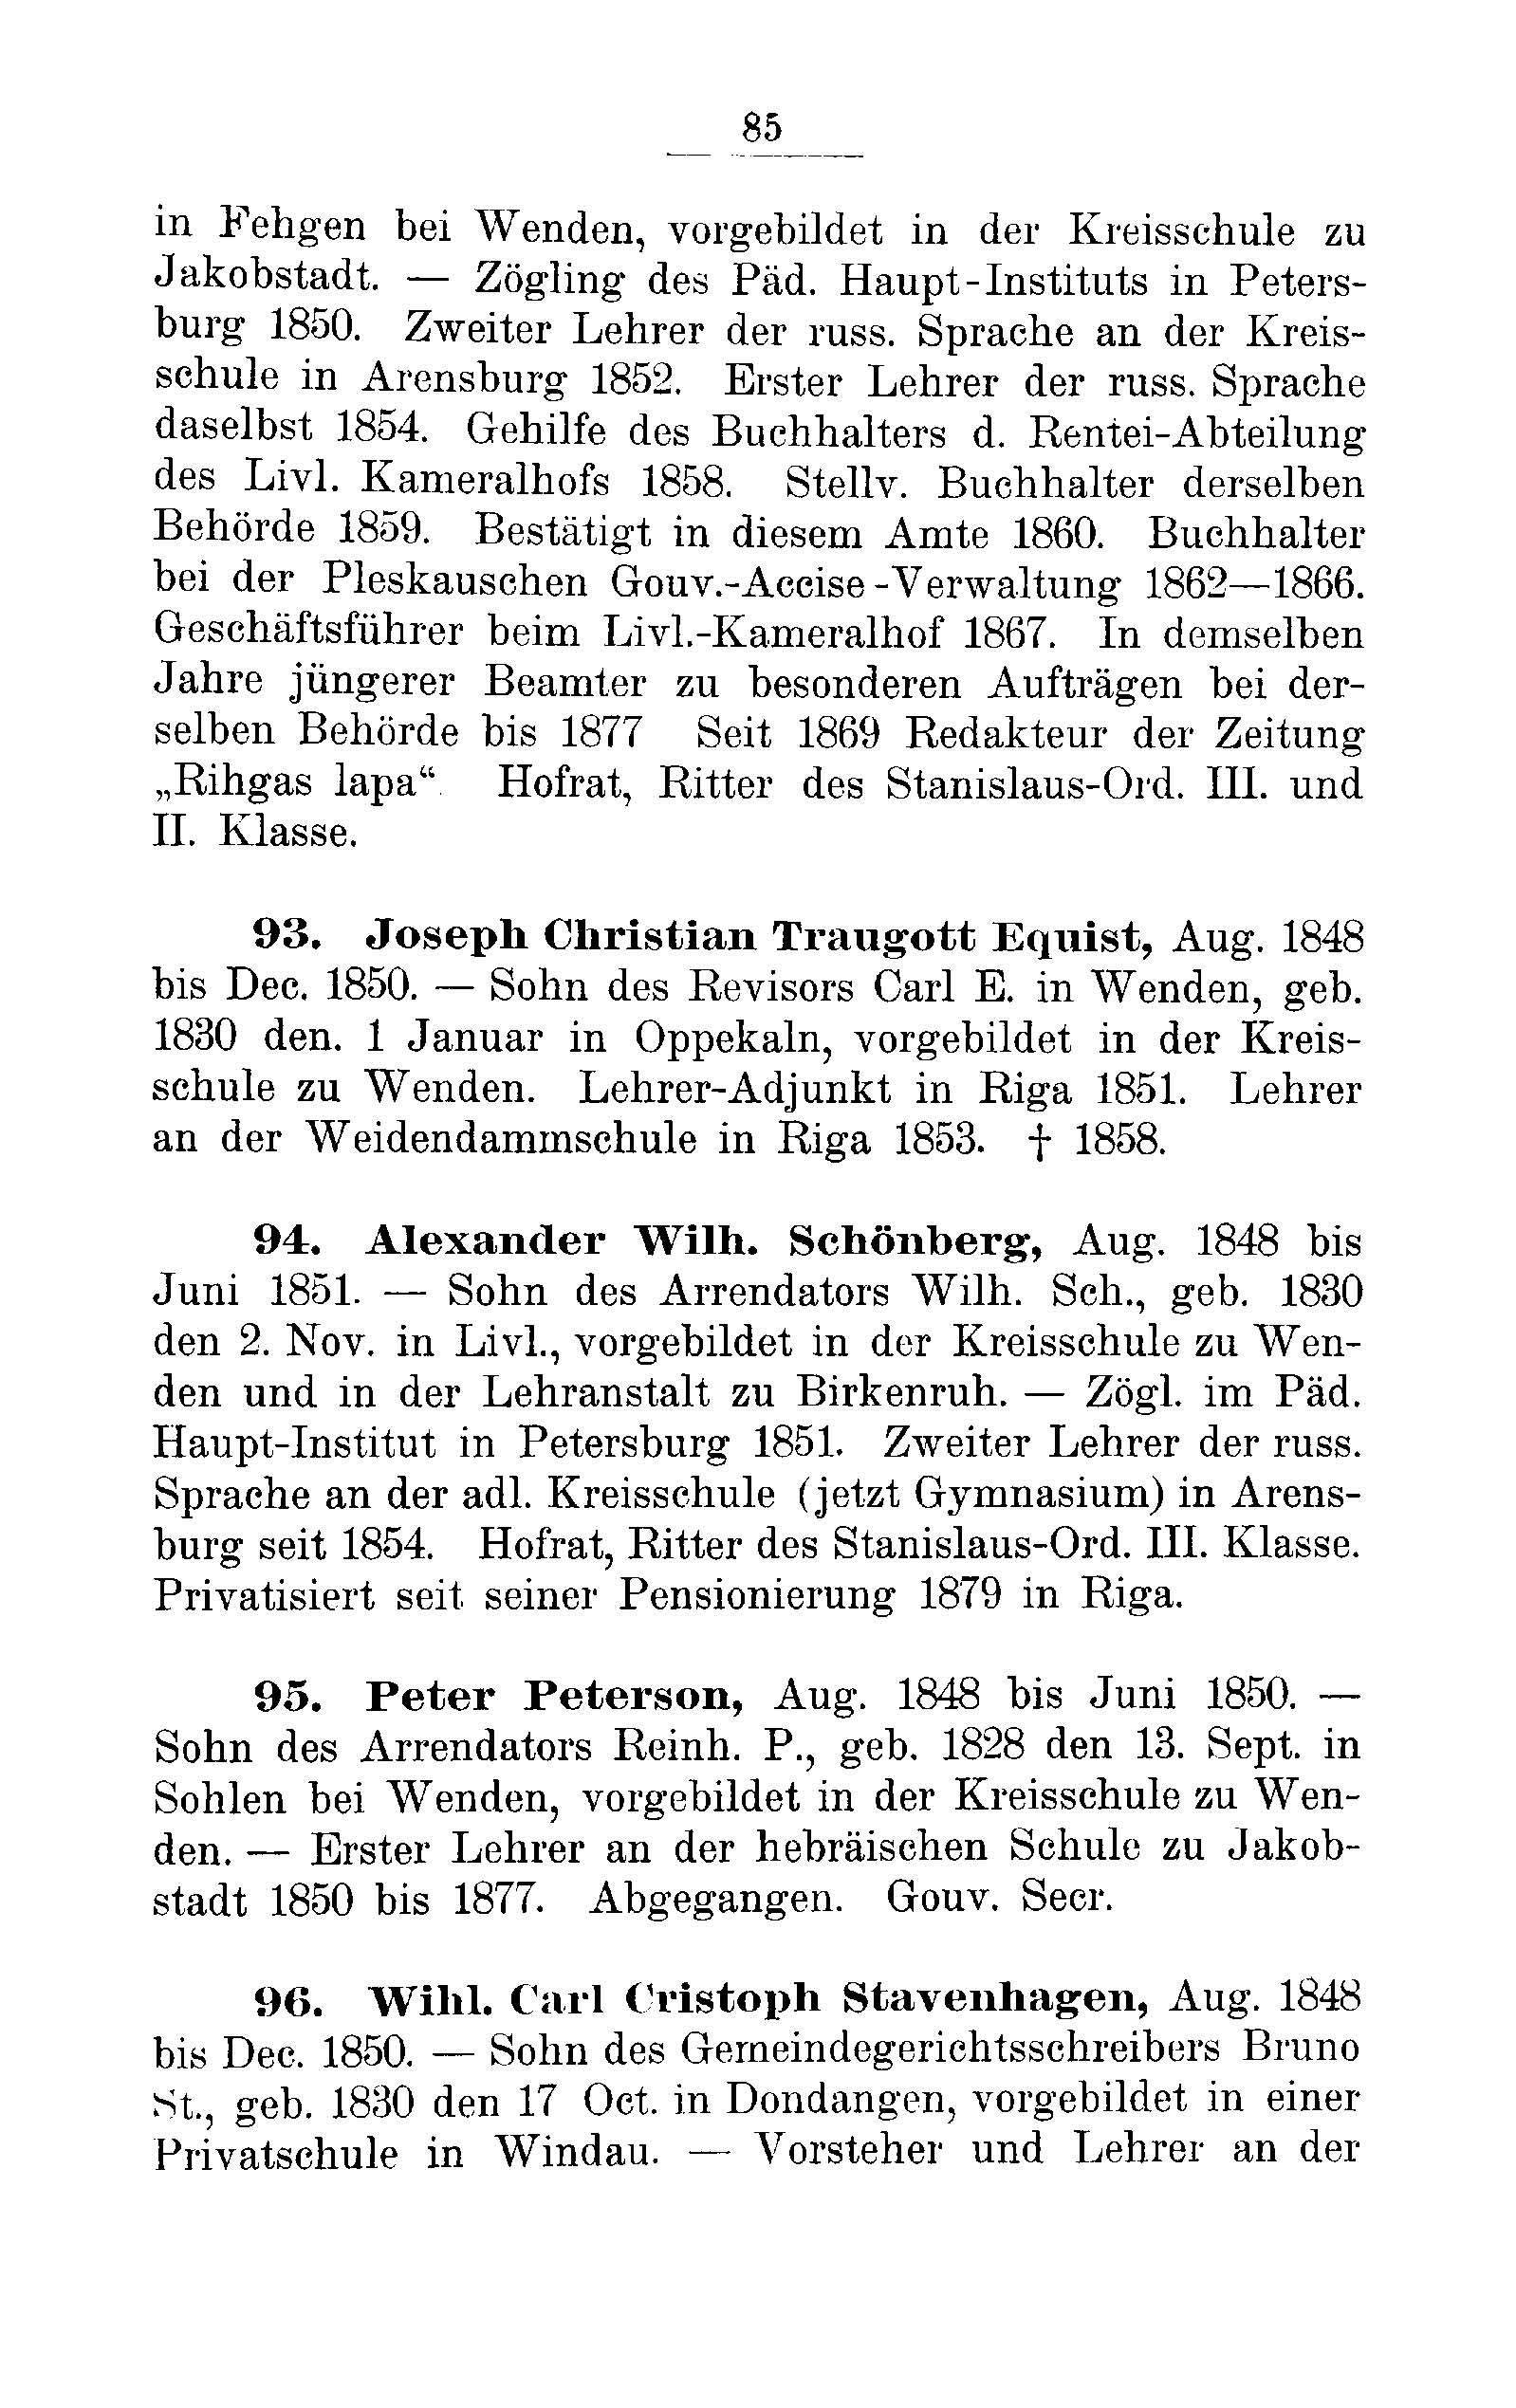 Das Erste Dorpatsche Lehrer-Seminar (1890) | 88. Main body of text